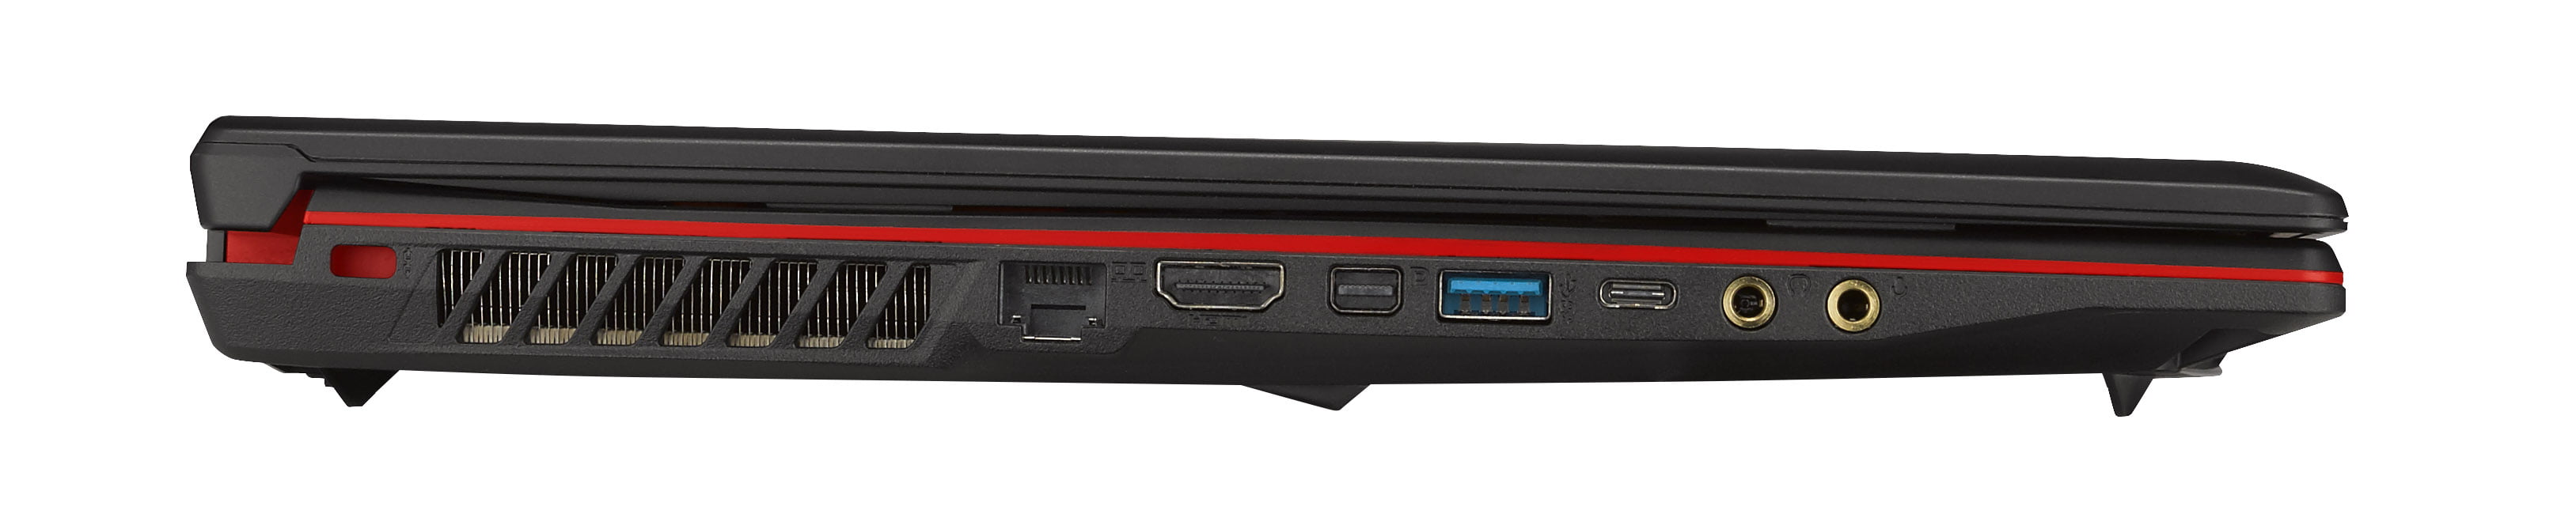 MSI GL63 Ordinateur portable PC Gaming 256 Go SSD + 1 To HDD - 6 Core  i7-8750H - 8 Go de RAM DDR4 - Geforce GTX1050ti - 120 Hz 15,6 IPS LCD  (Noir - Rétroéclairage rouge) : : Électronique